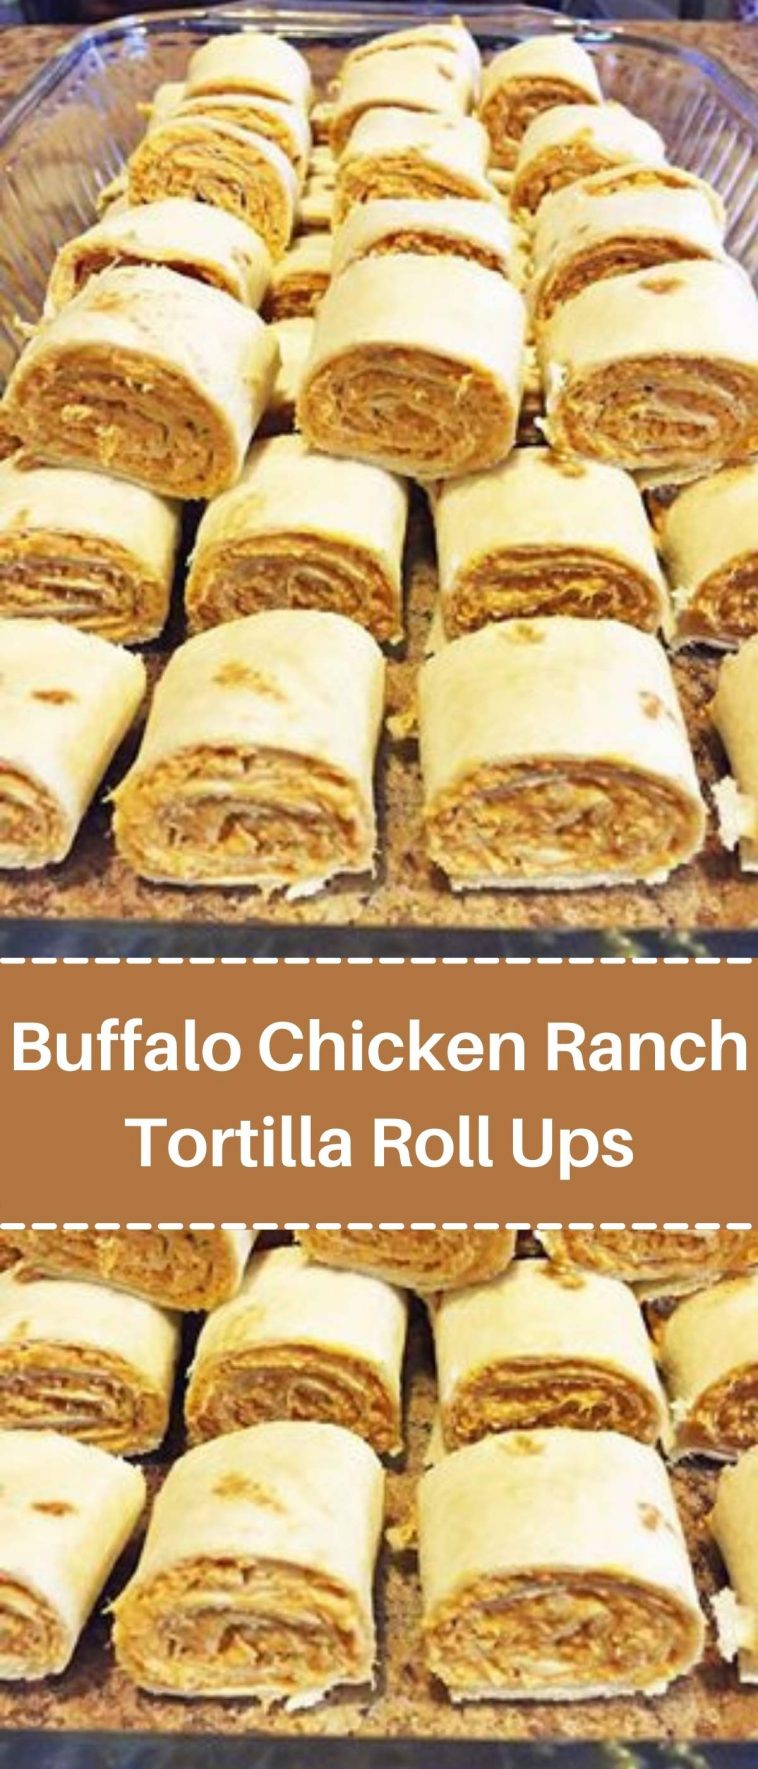 Buffalo Chicken Ranch Tortilla Roll Ups